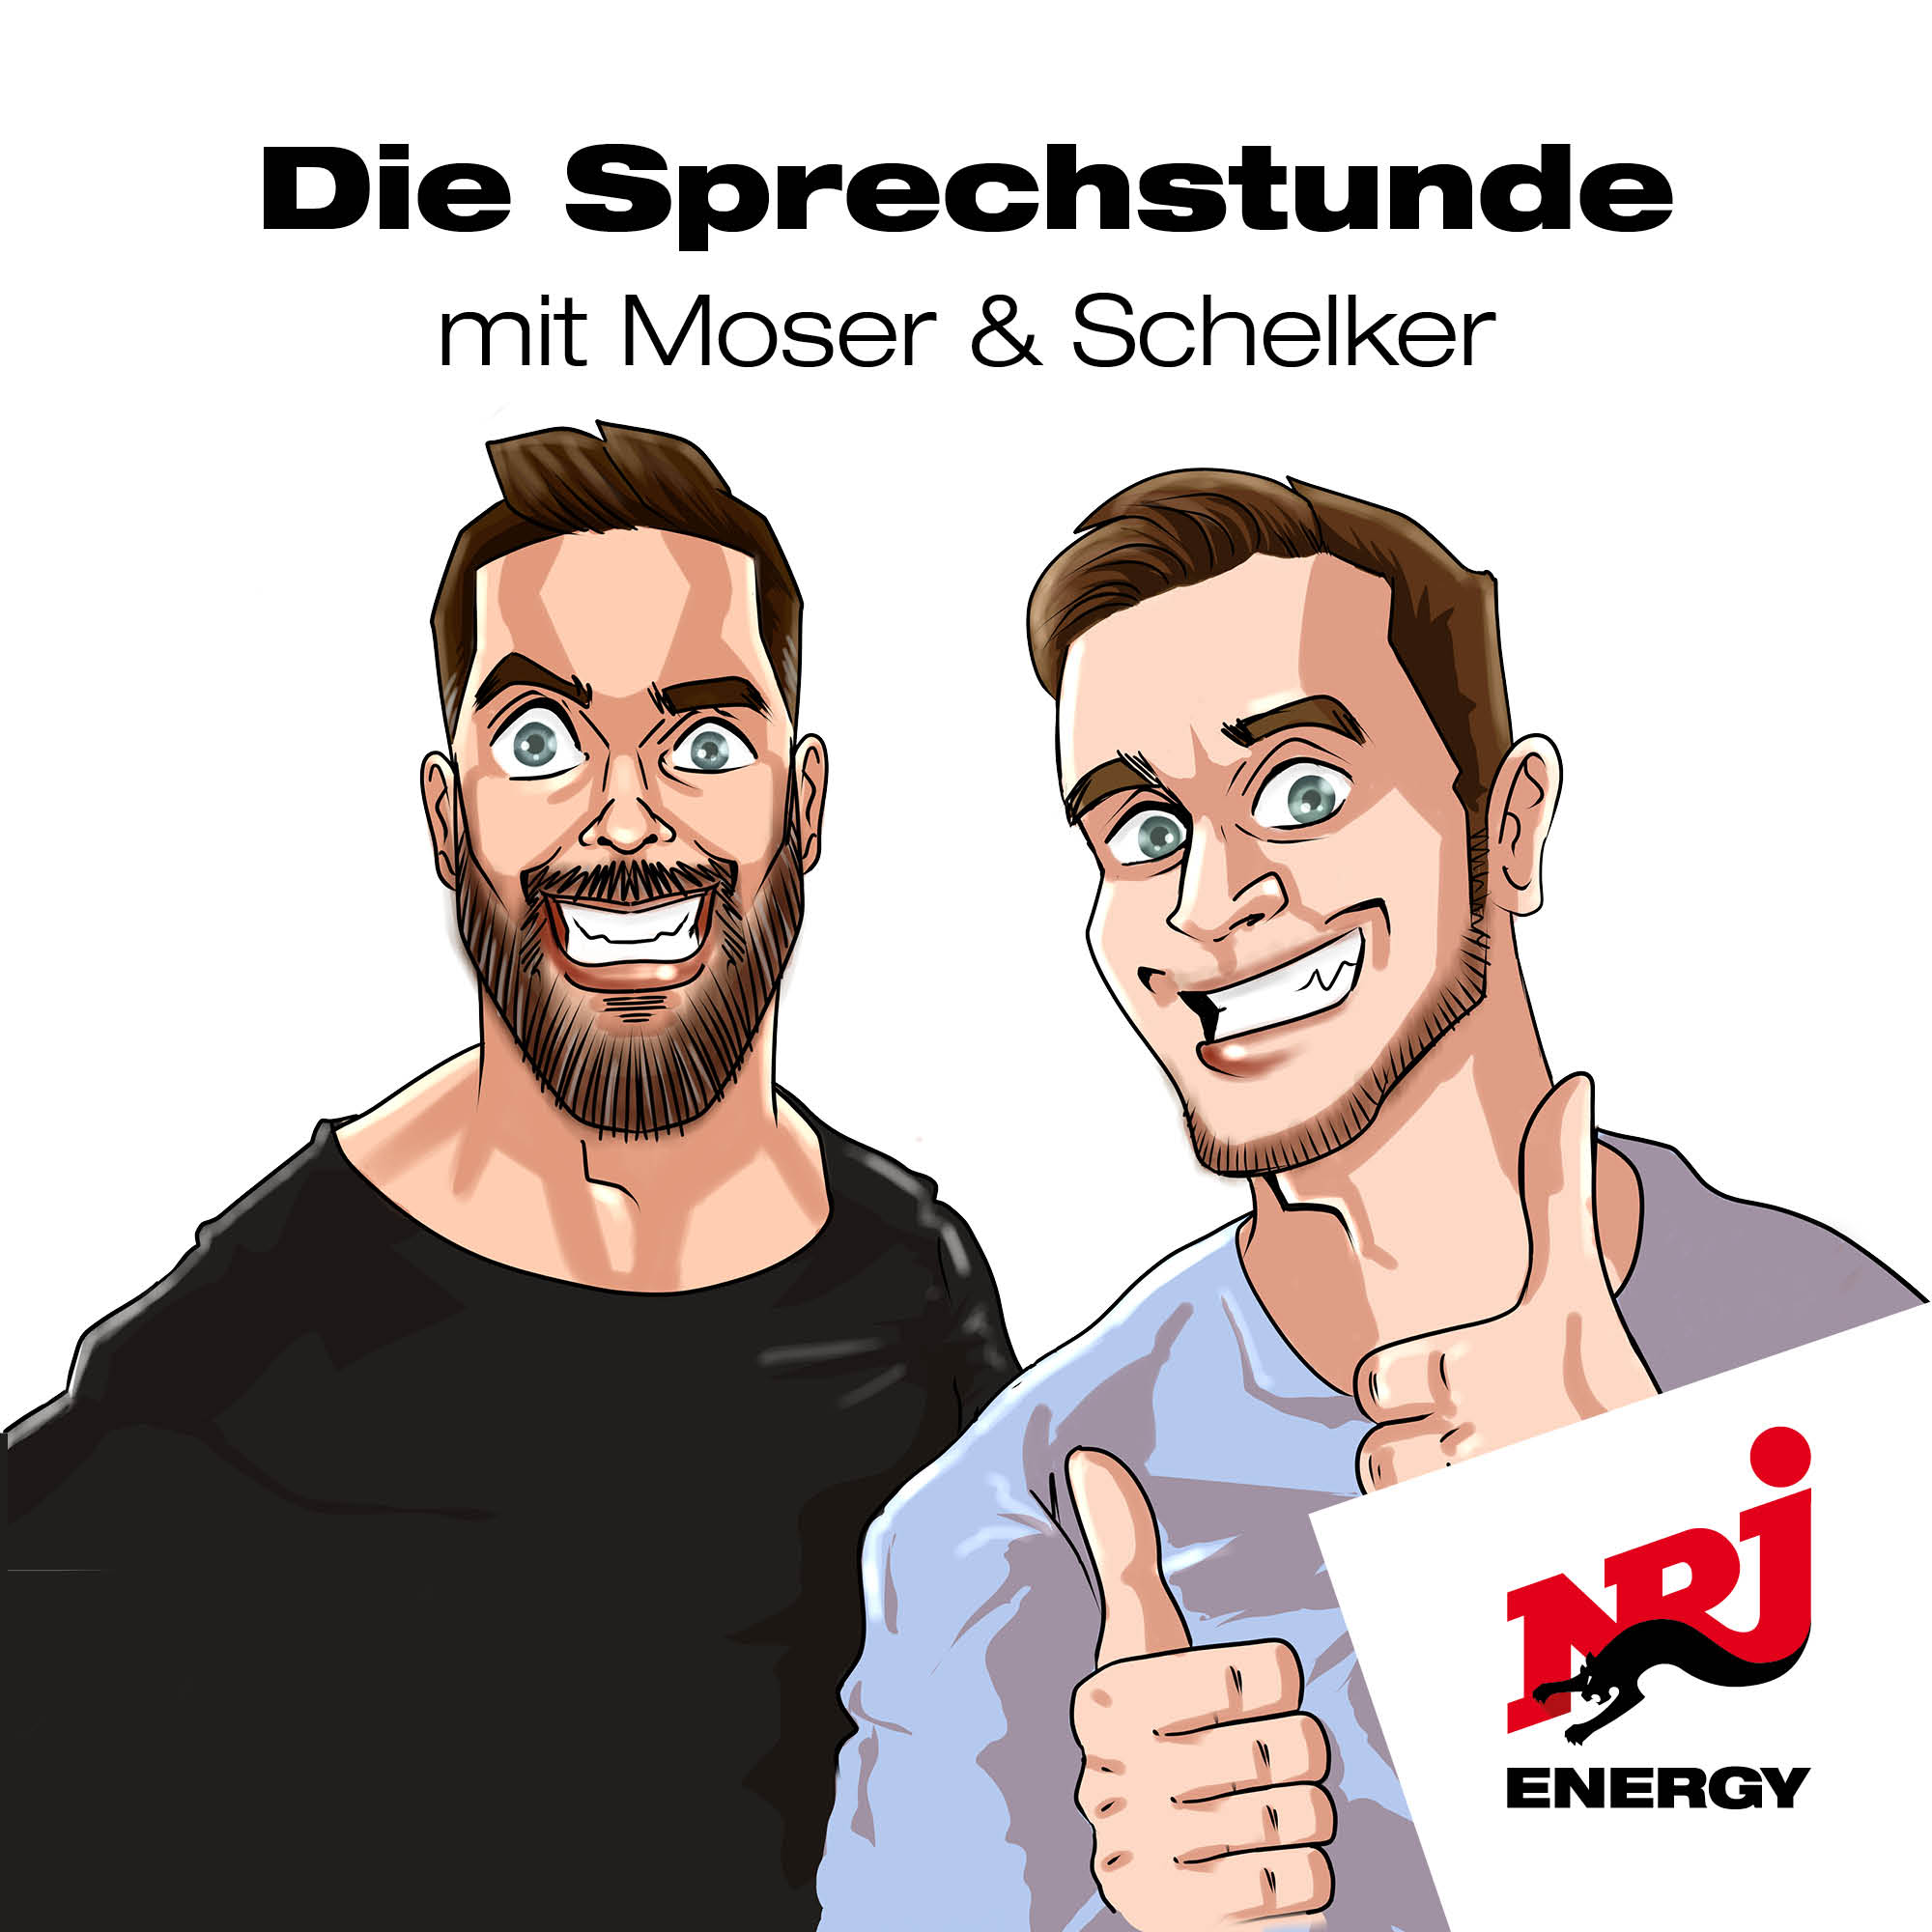 Die Sprechstunde – mit Moser & Schelker